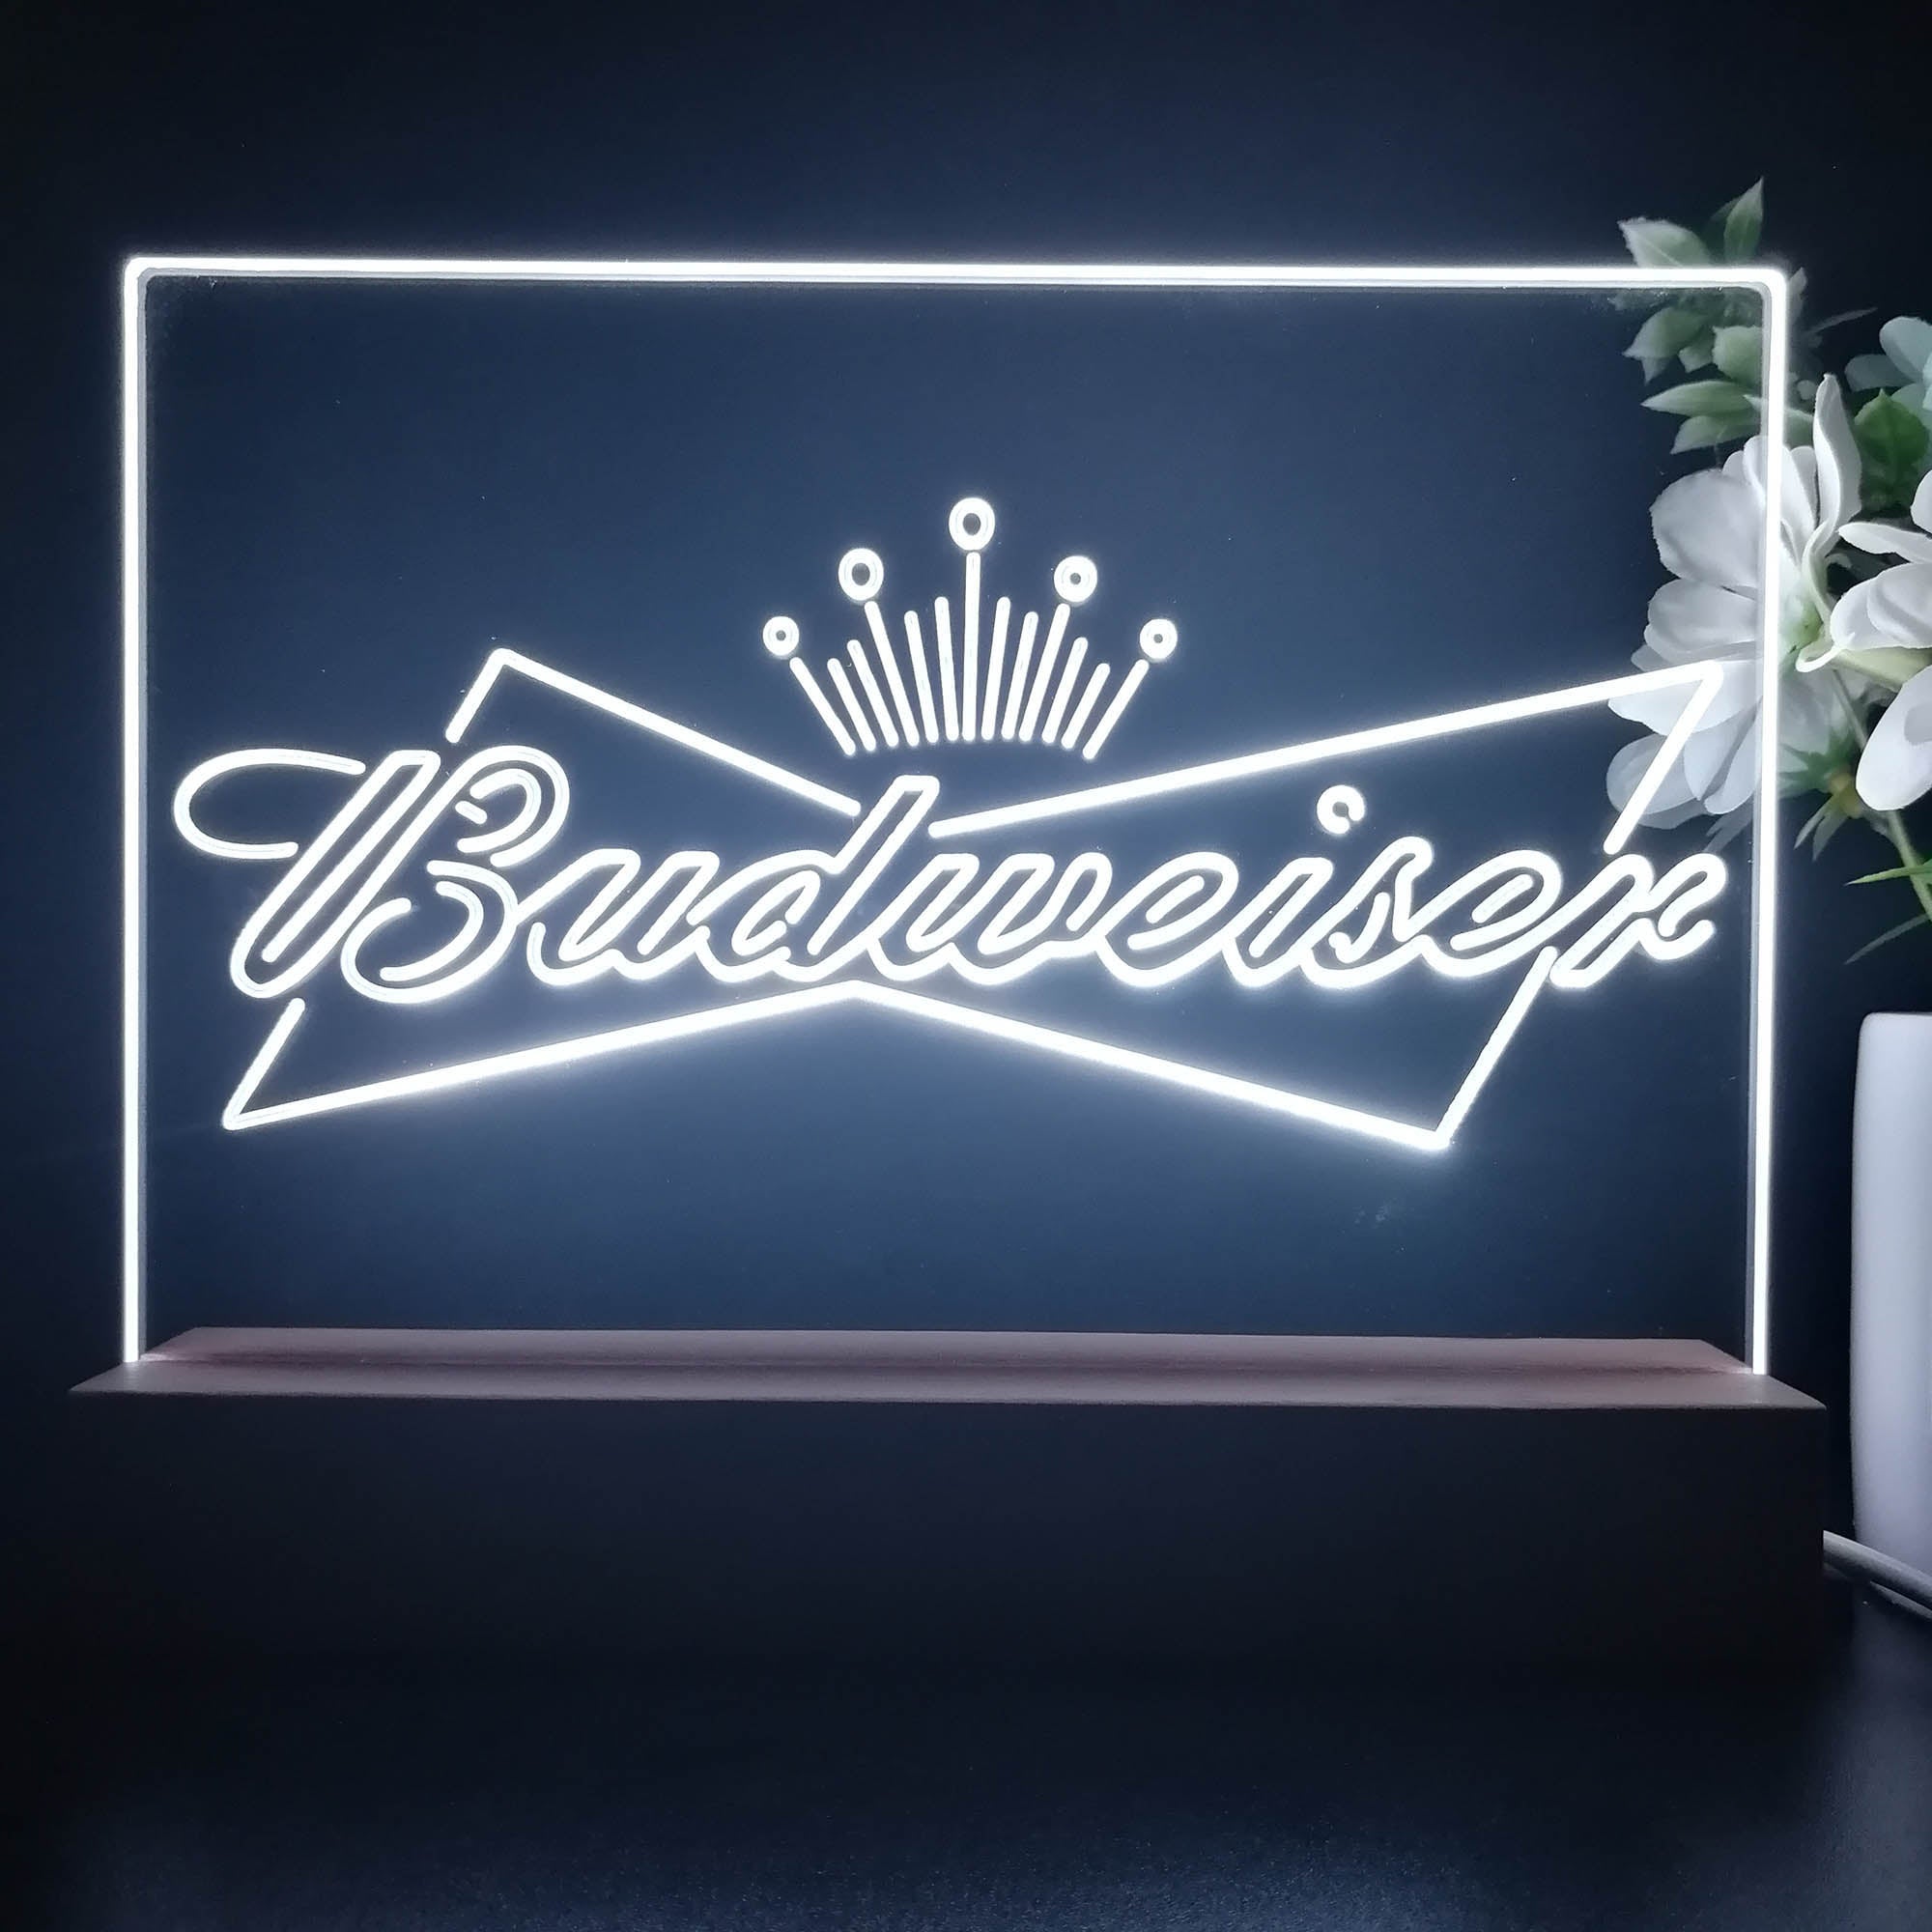 Budweisers Bowtie Crown Neon Sign Pub Bar Lamp